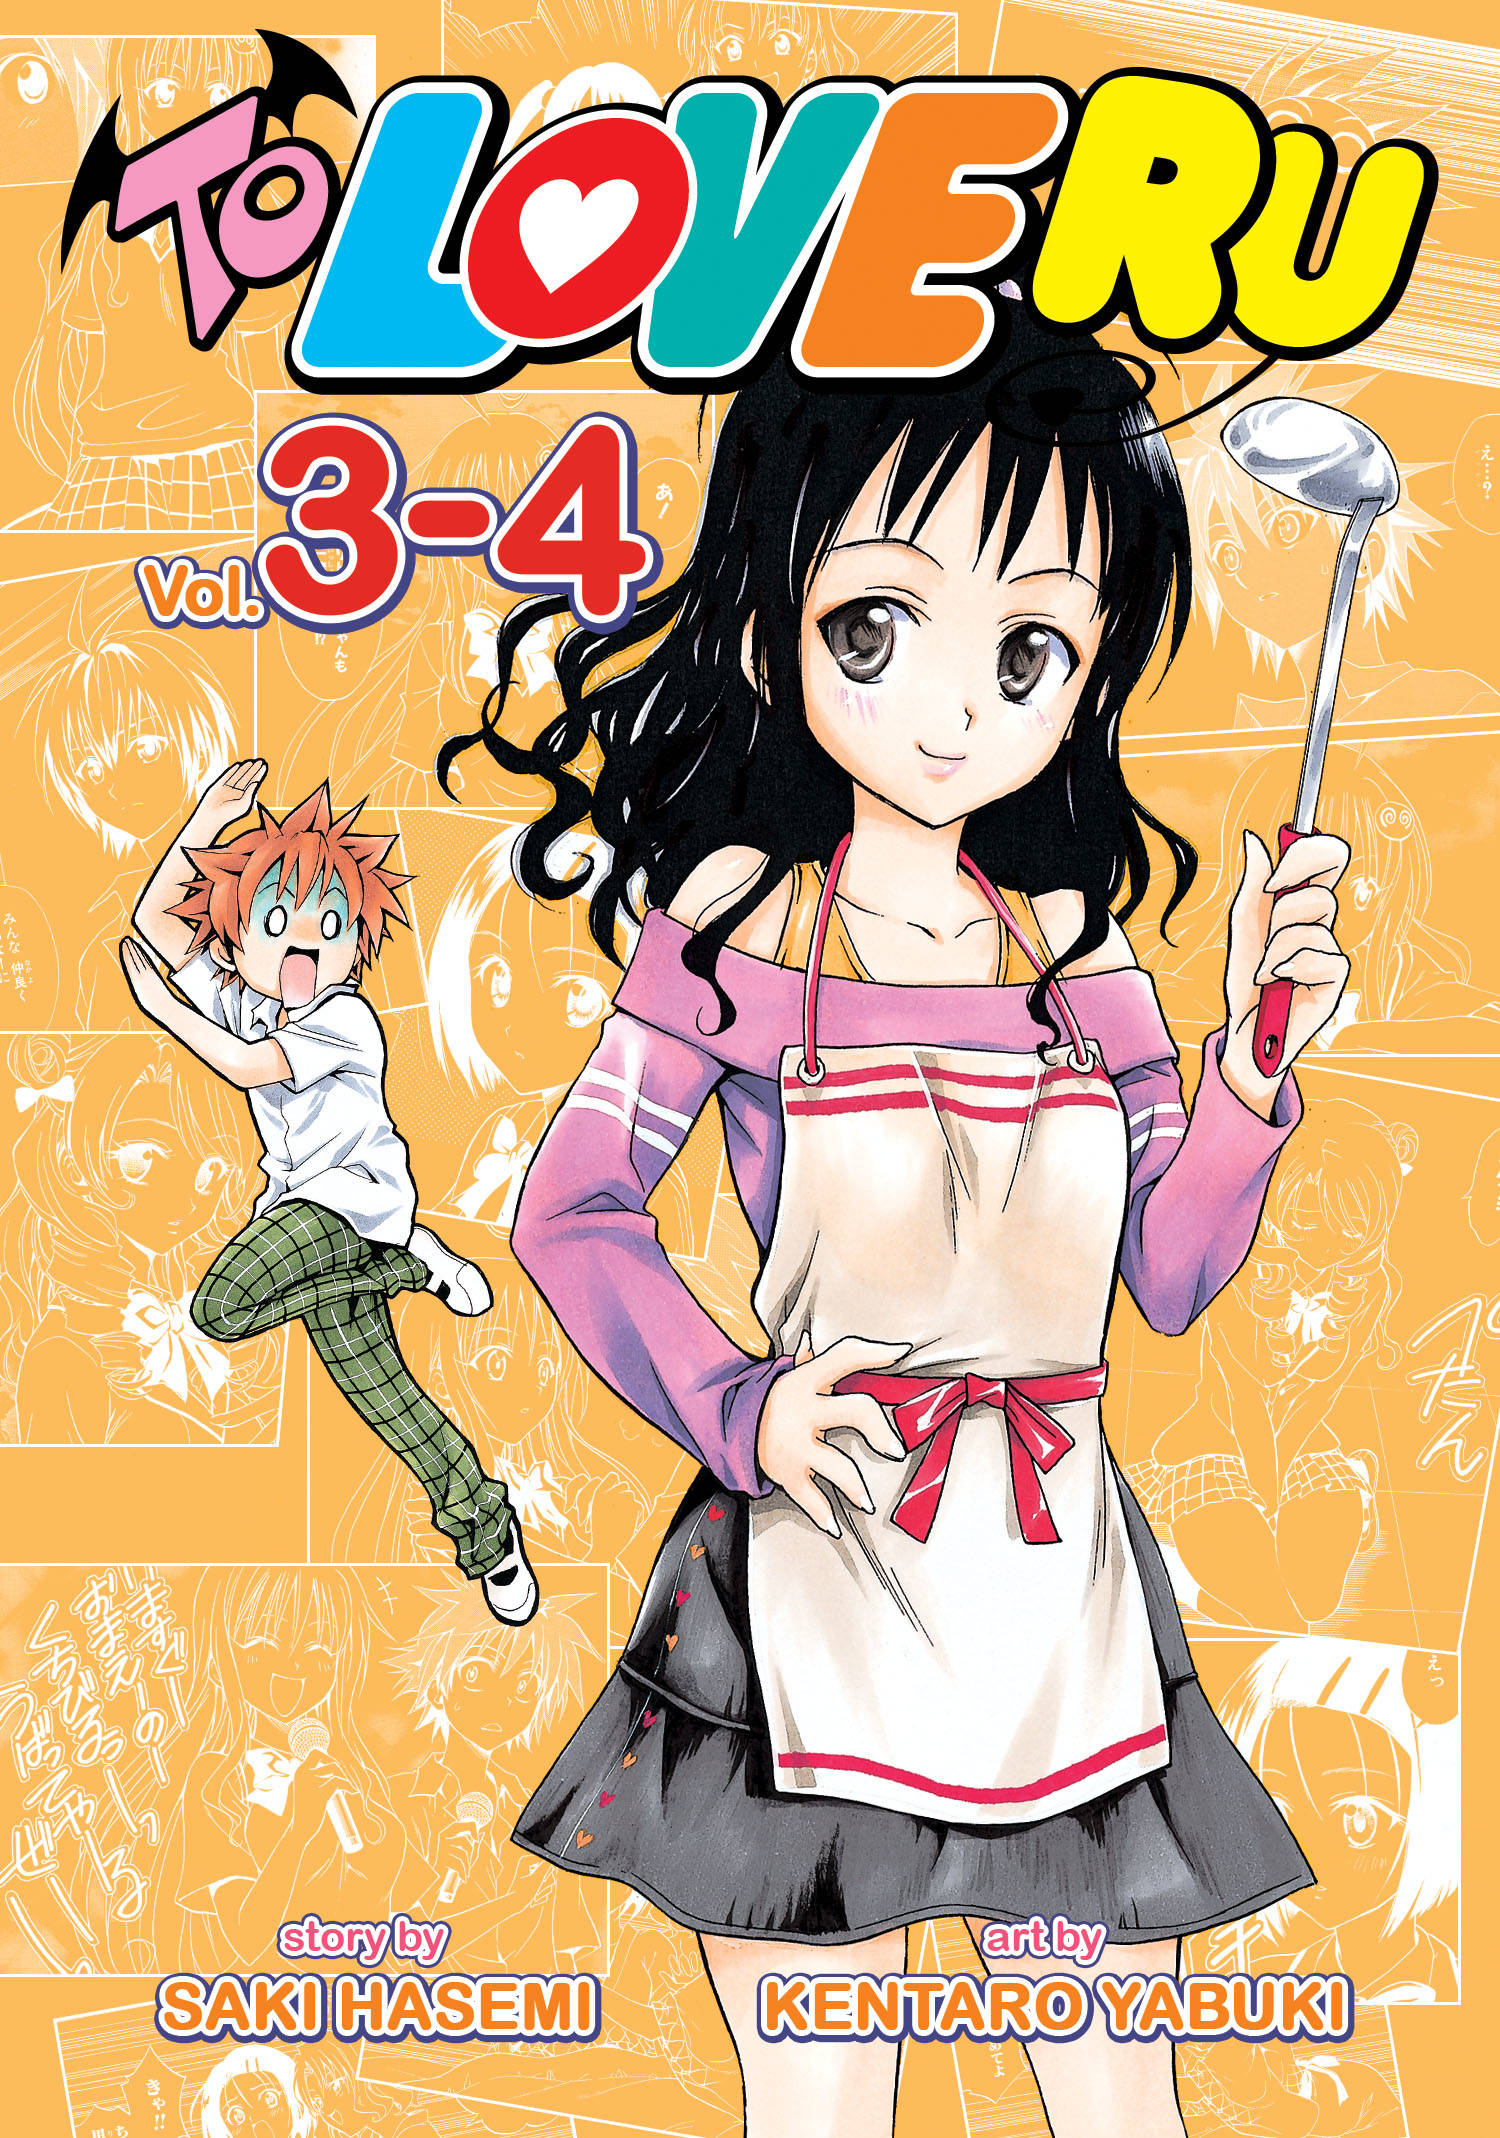 To Love Ru Manga Volume 3-04 Volume 2 (Mature)